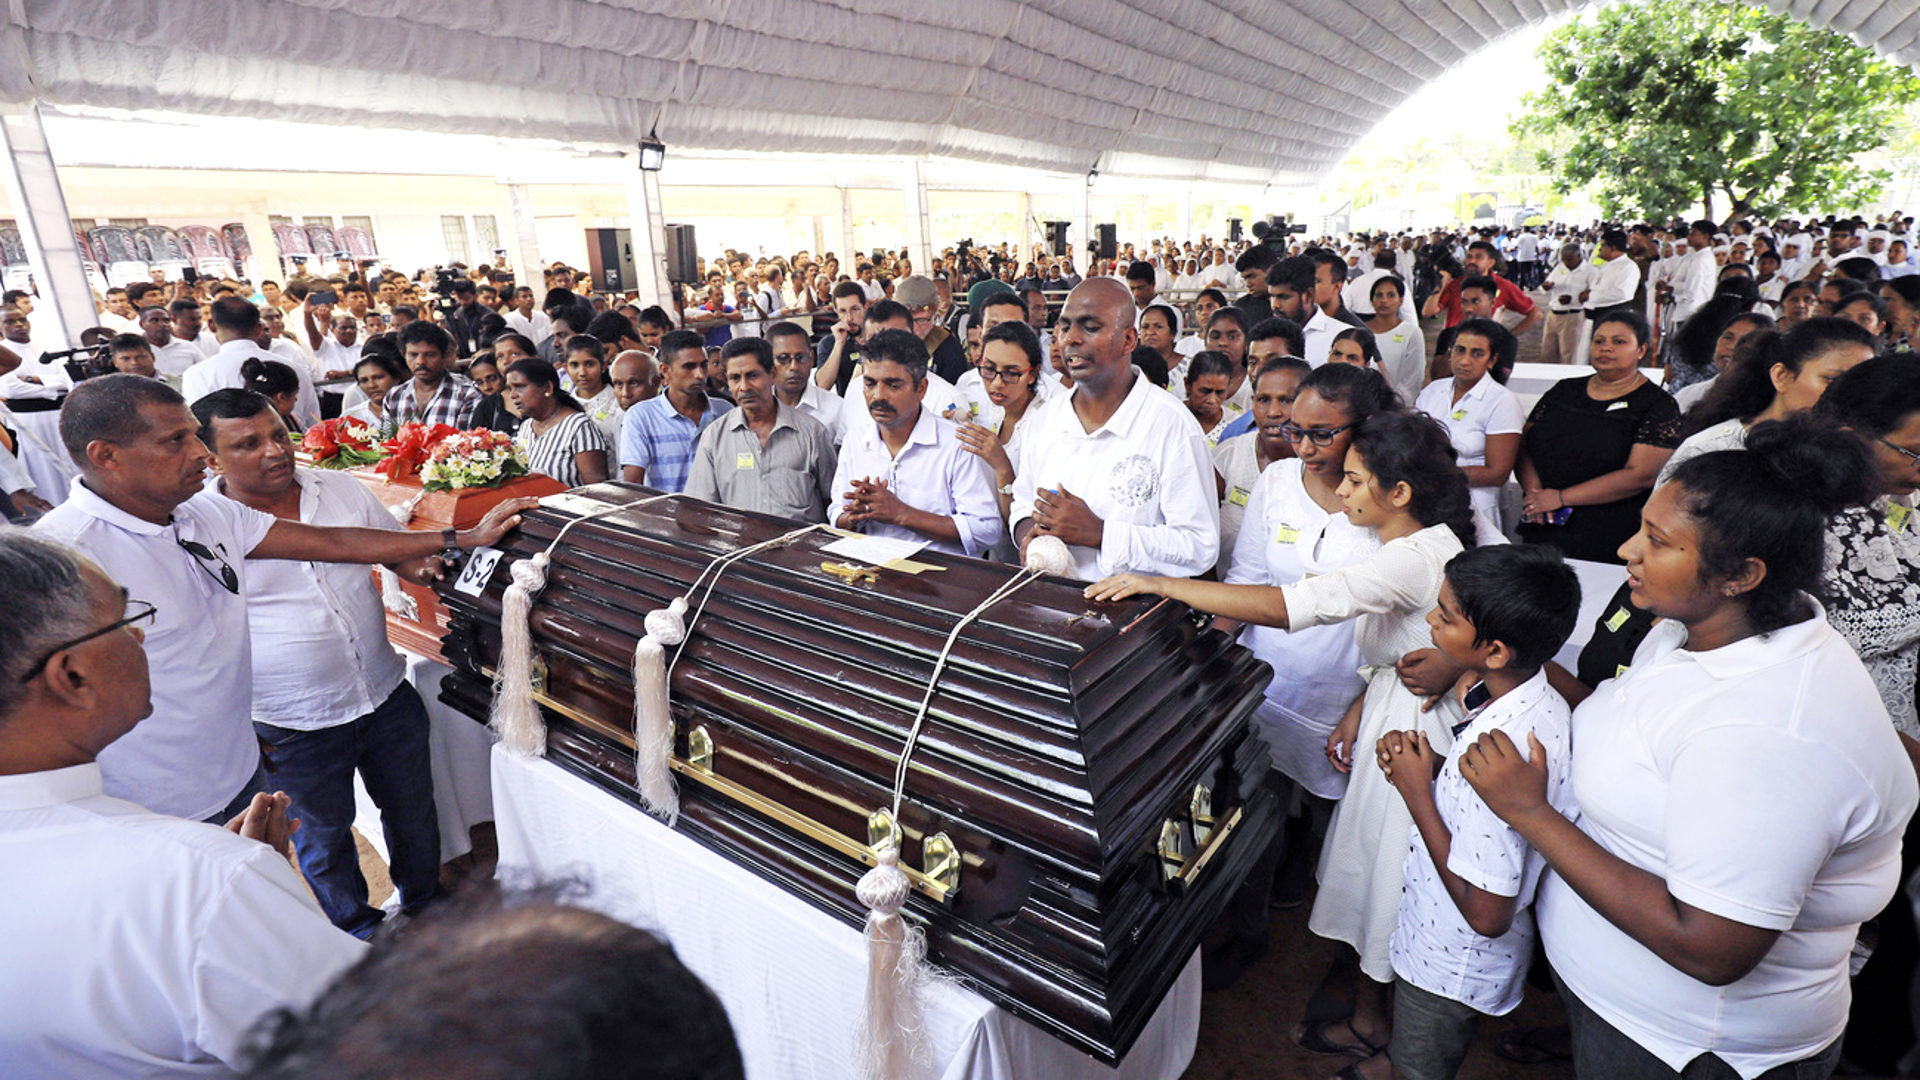 Beerdigung von Opfern des Terroranschlags in der Kirche St. Sebastian in Negombo (Sri Lanka), 23. April 2019.